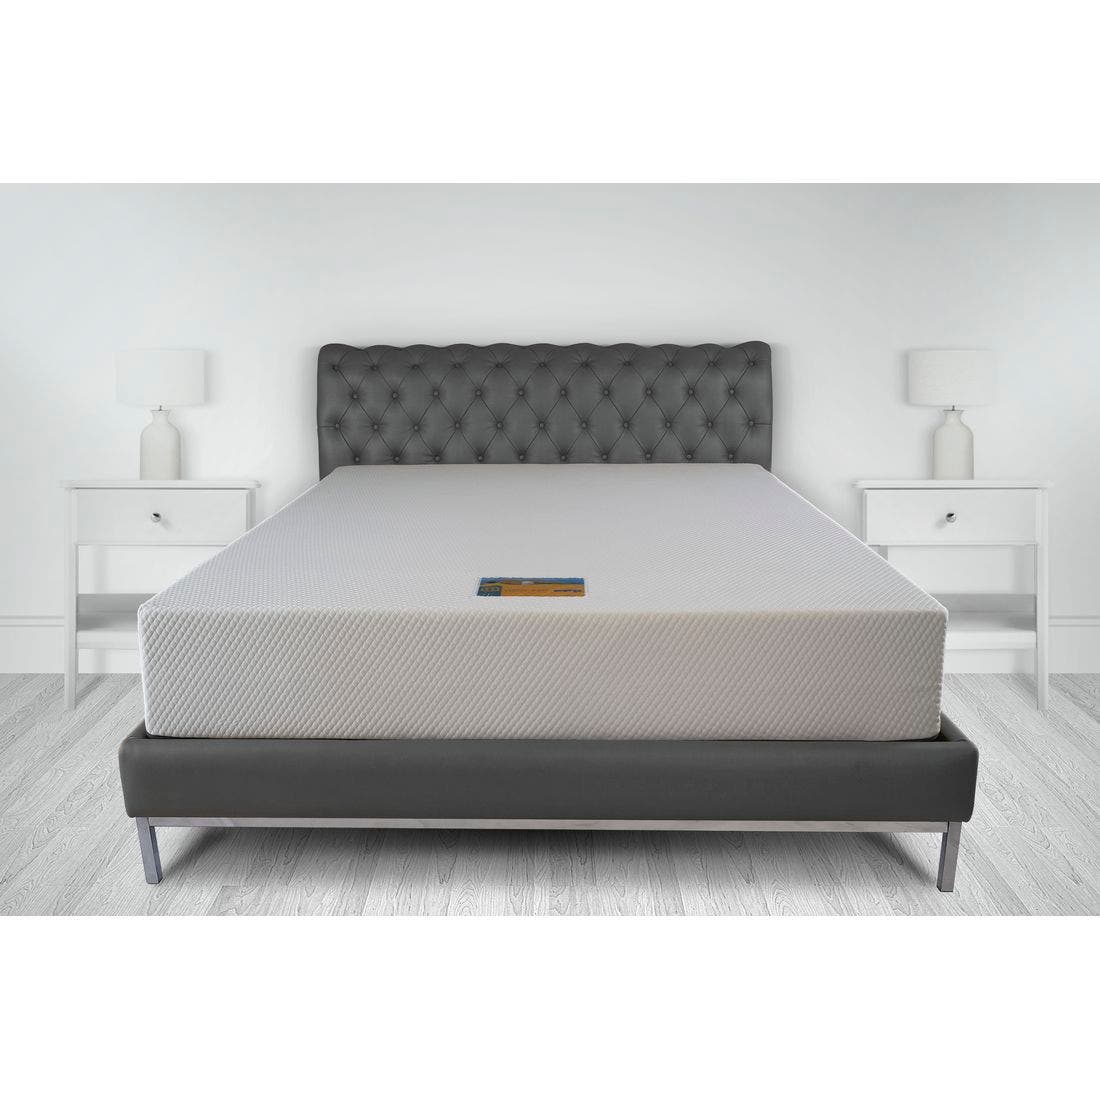 39015041-mattress-bedding-mattresses-memory-foam-mattresses-31